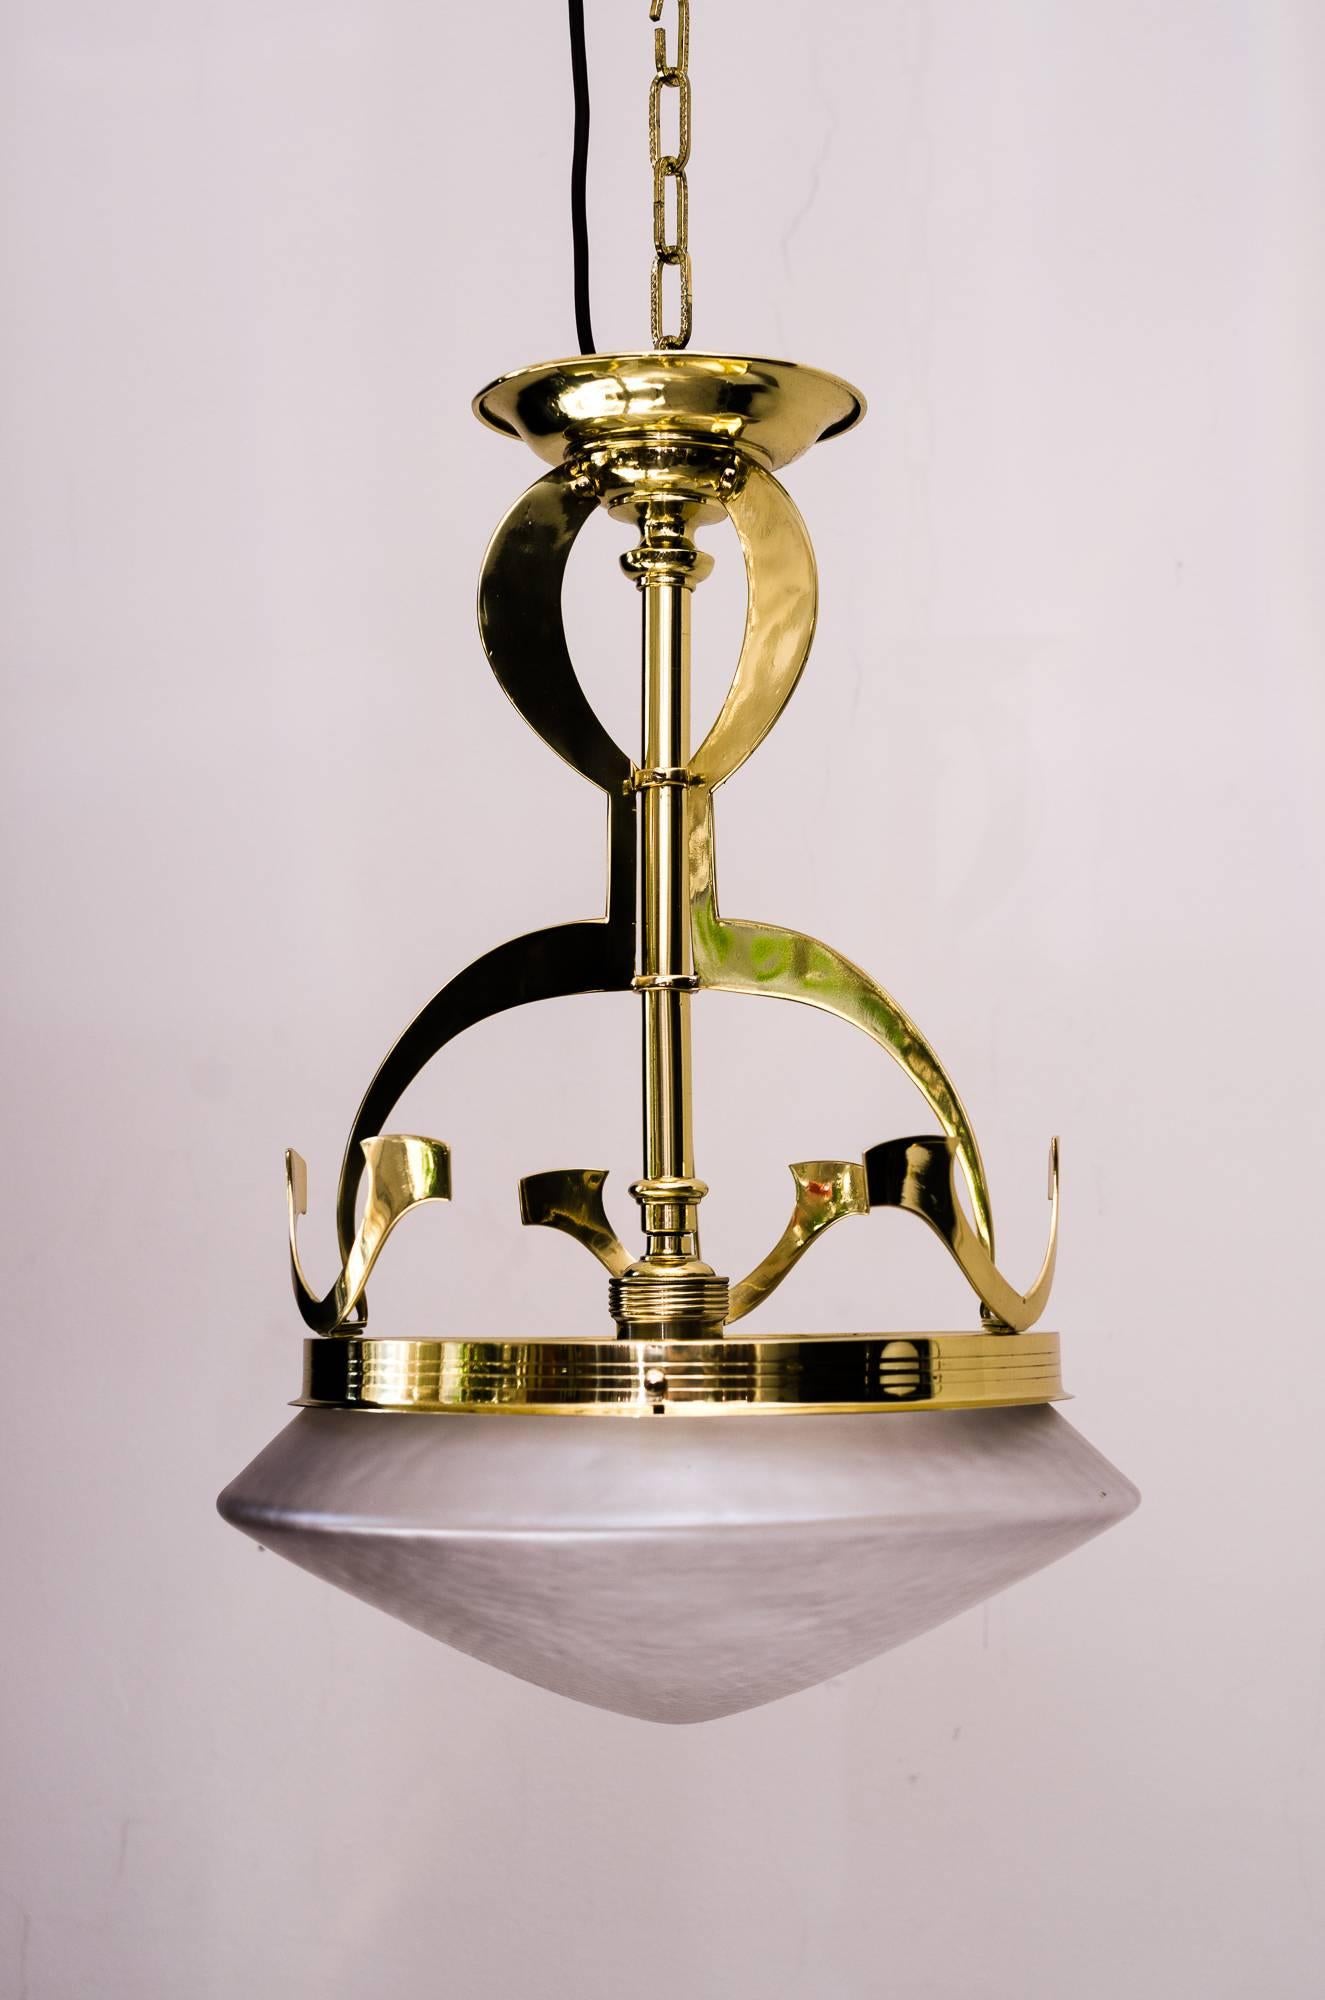 Jugendstil ceiling lamp, circa 1908 with original glass
Polished and stove enameled.